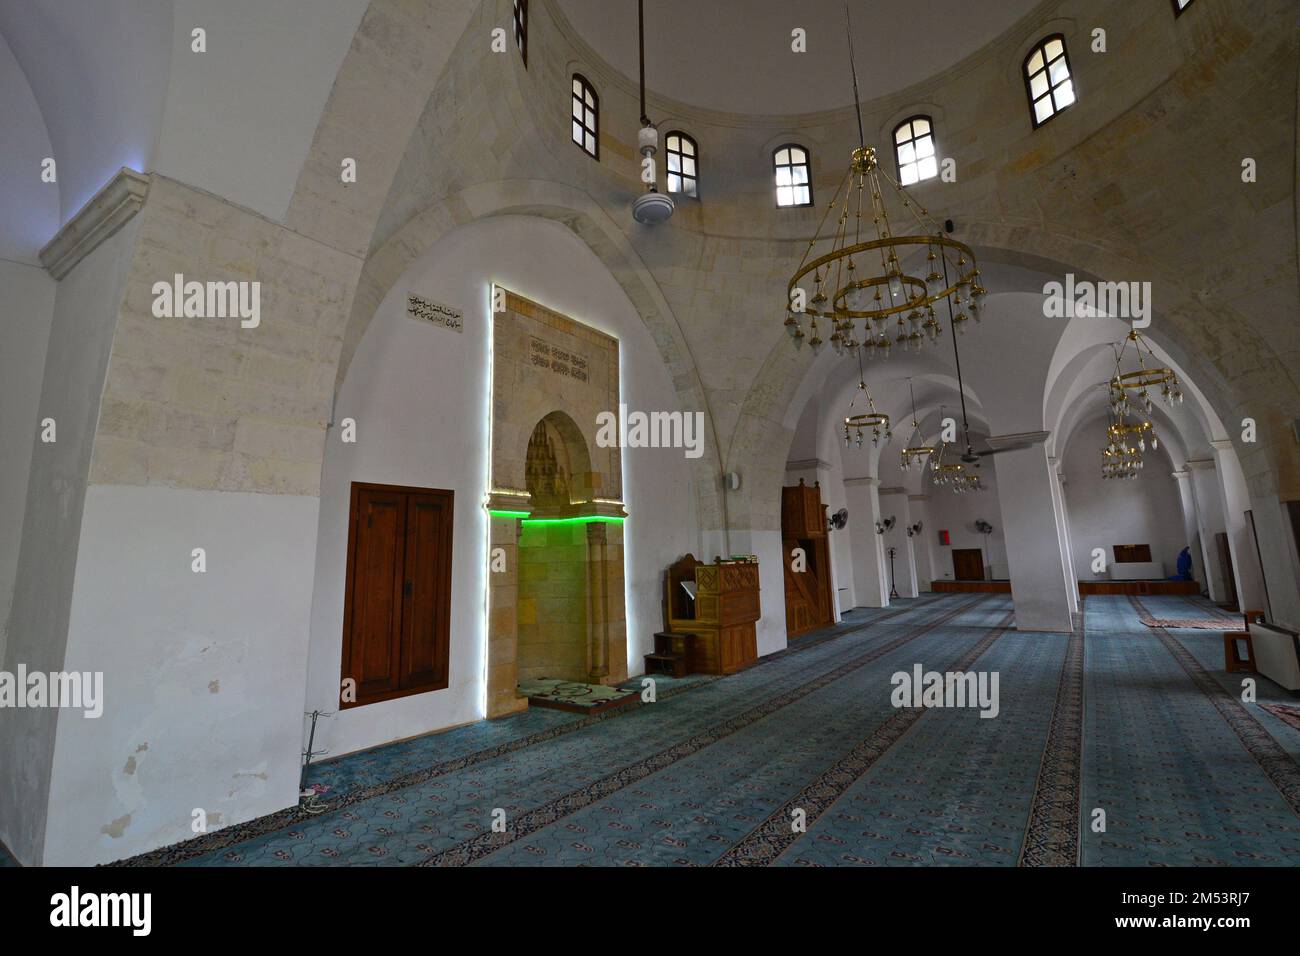 Situata a Kilis, Turchia, la Grande Moschea è stata ricostruita nel 1388 da Hac Halil, figlio di Abdullah. Fu riparata nel 1912 e nel 1924. Foto Stock